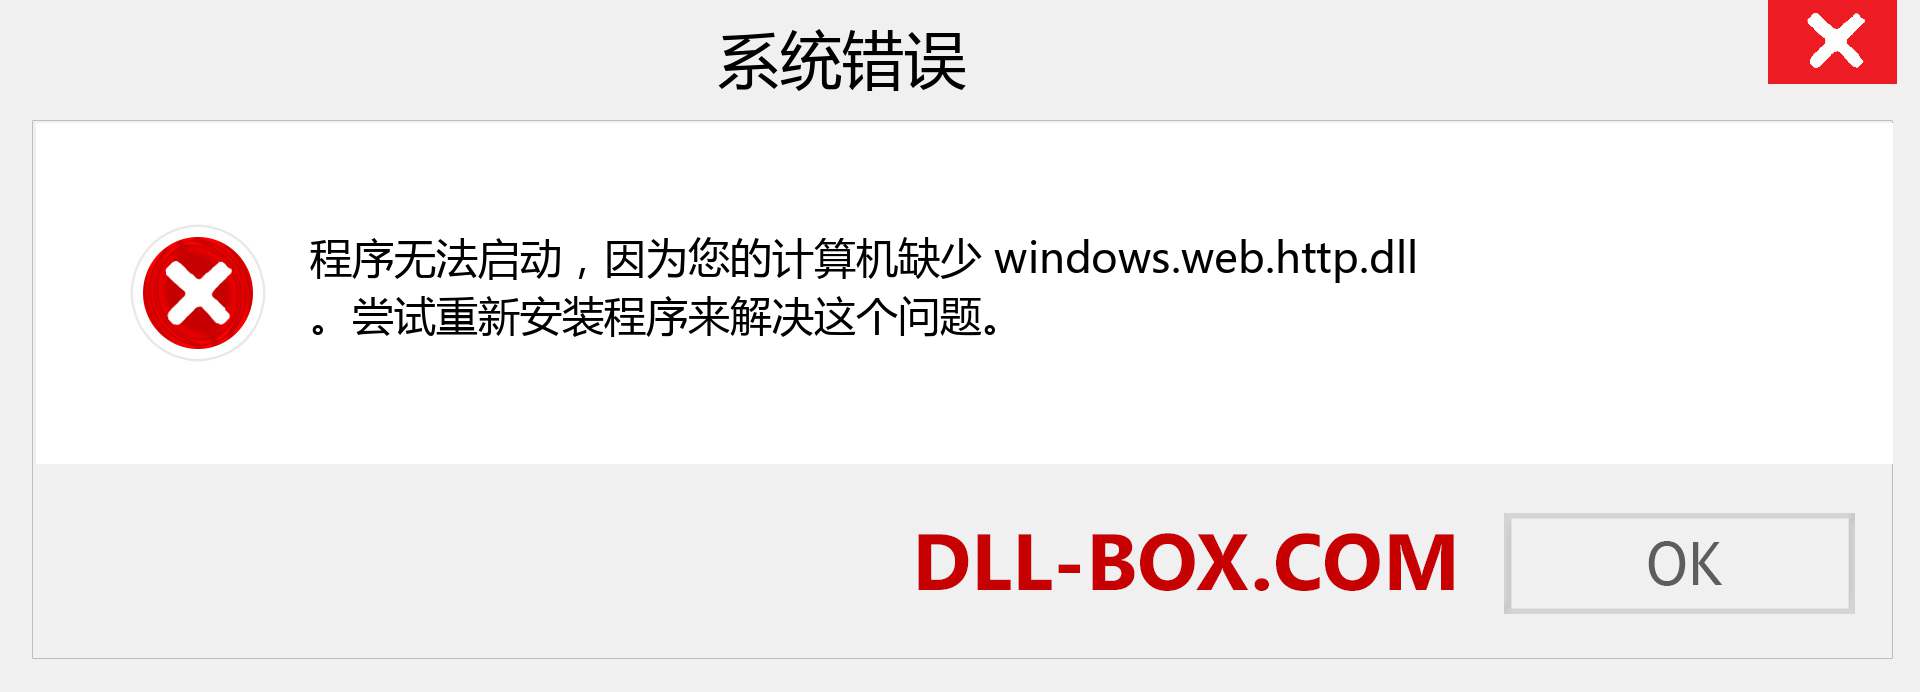 windows.web.http.dll 文件丢失？。 适用于 Windows 7、8、10 的下载 - 修复 Windows、照片、图像上的 windows.web.http dll 丢失错误